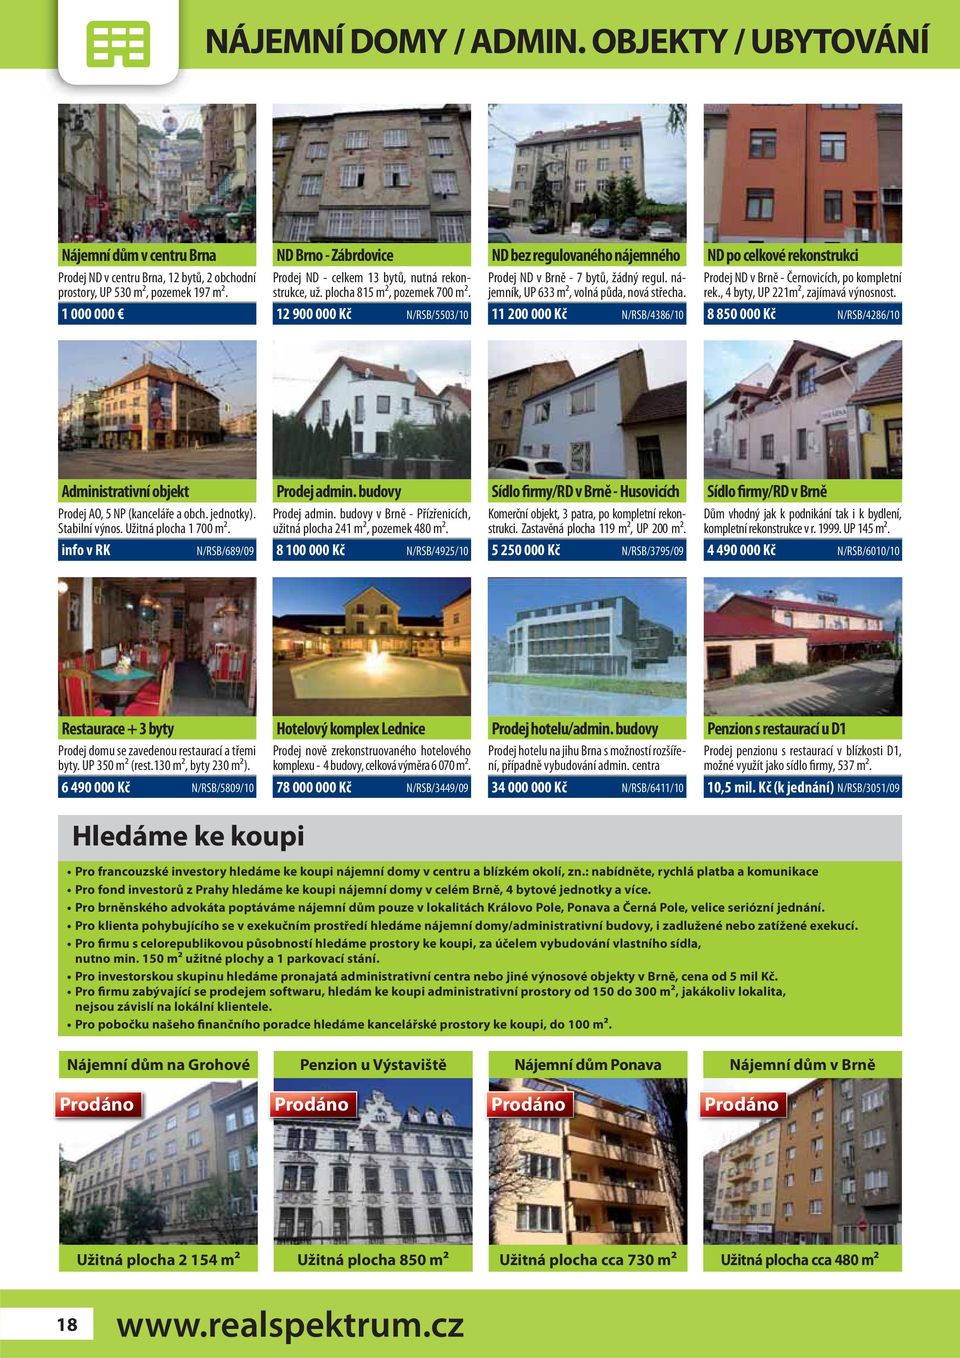 12 900 000 Kč N/RSB/5503/10 ND bez regulovaného nájemného Prodej ND v Brně - 7 bytů, žádný regul. nájemník, UP 633 m2, volná půda, nová střecha.